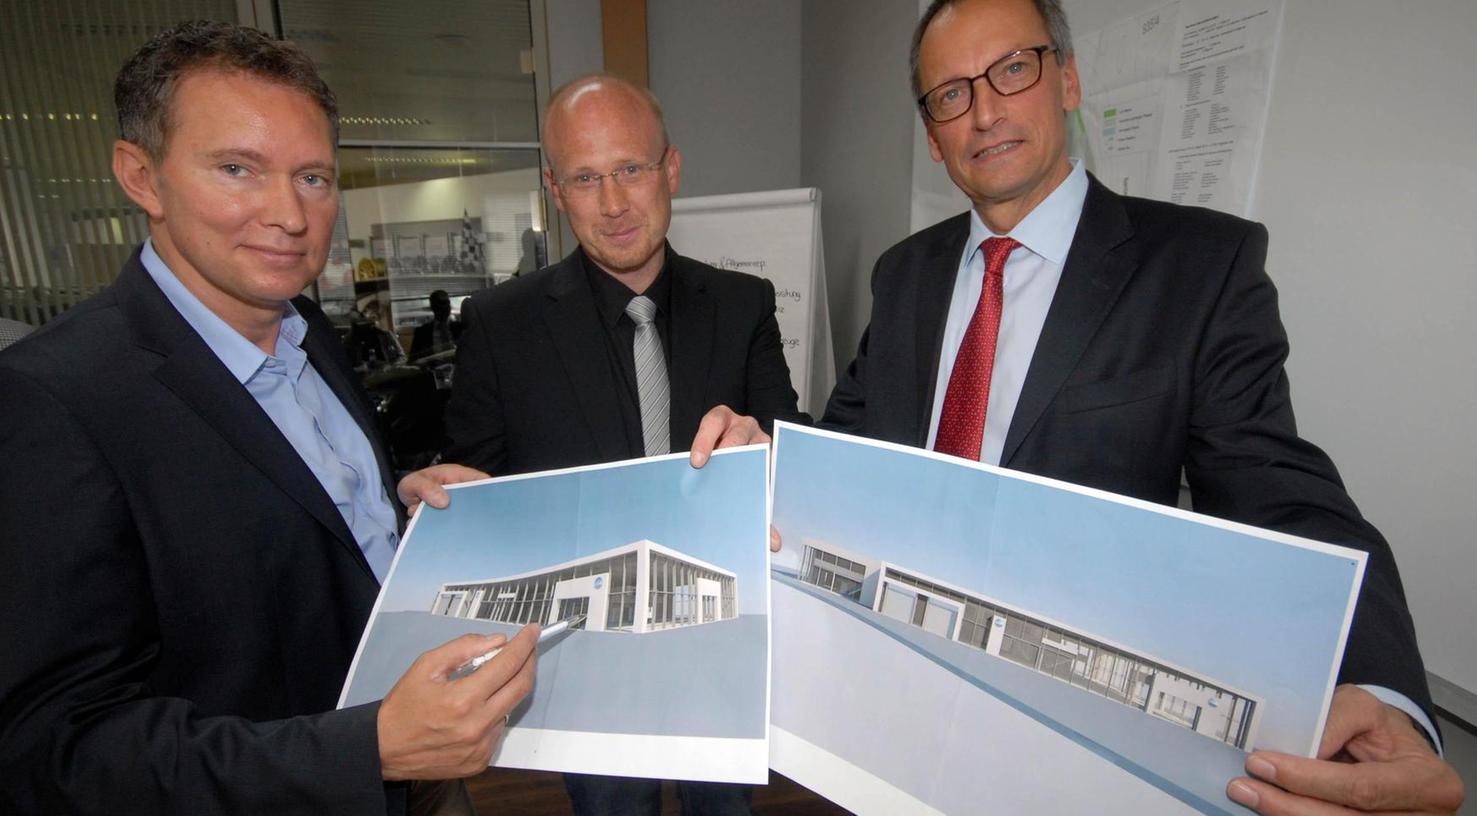 VW in Herzogenaurach: Ambitioniertes Projekt